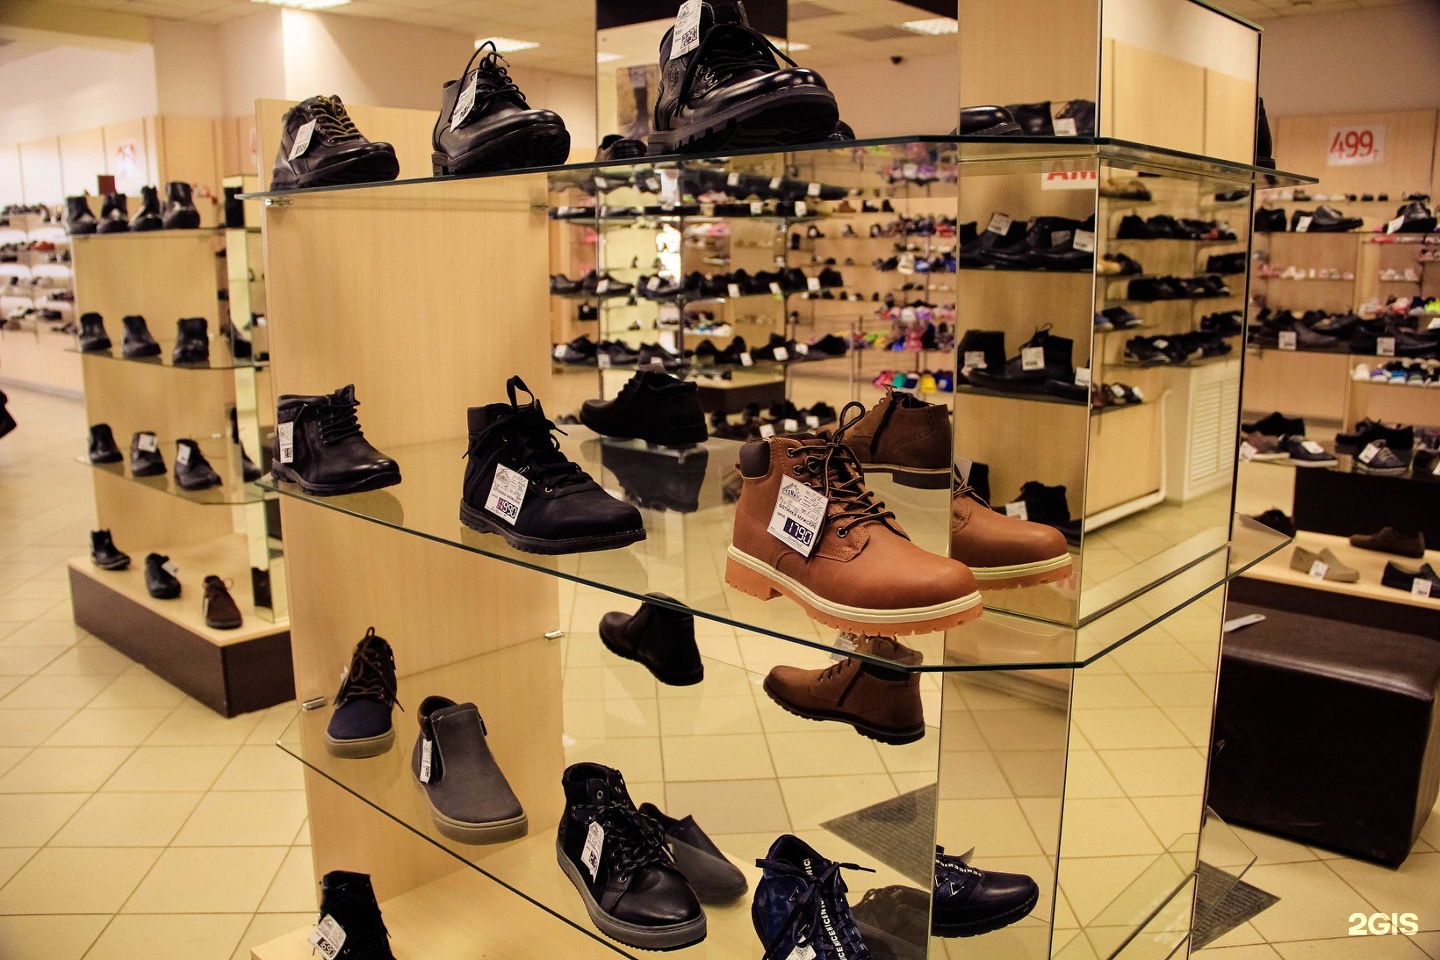 Мужская обувь иркутск. Магазин обуви. Обувные магазины в центре Москвы. Обувь в ГУМ. Обувной магазин мужской обуви.